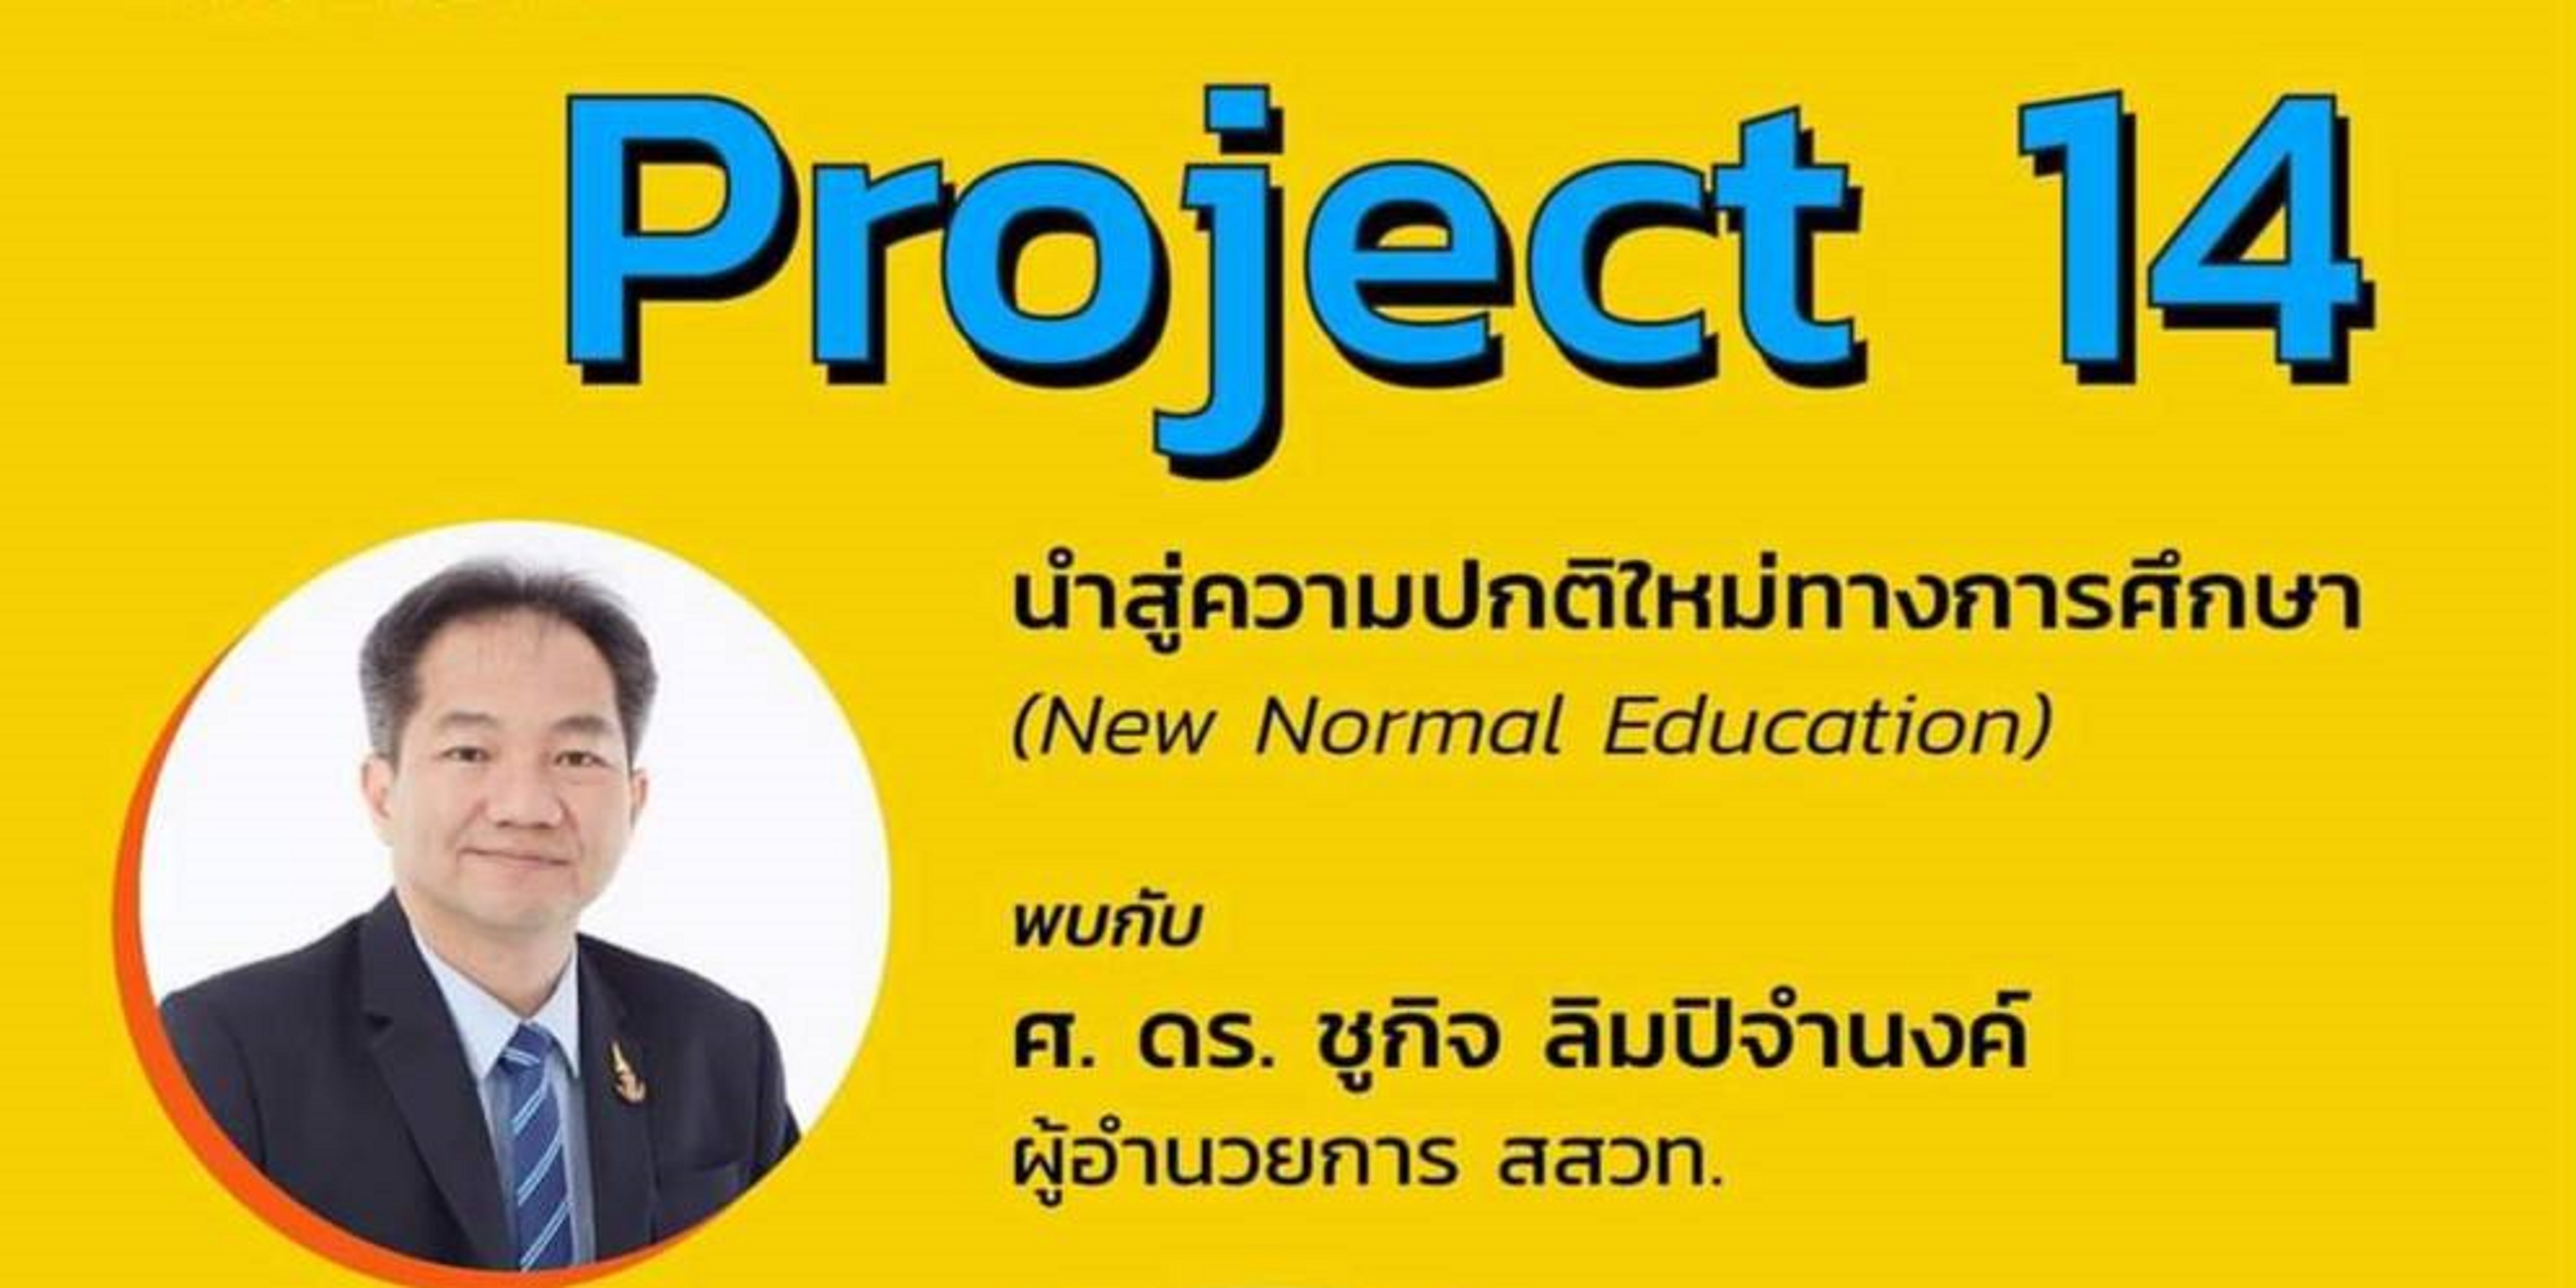 ครูกัลยา พร้อม สสวท. จัดทำโครงการ New Normal Education ผ่าน Project-14 หนุนการเรียน Online ครบทุกวิชา